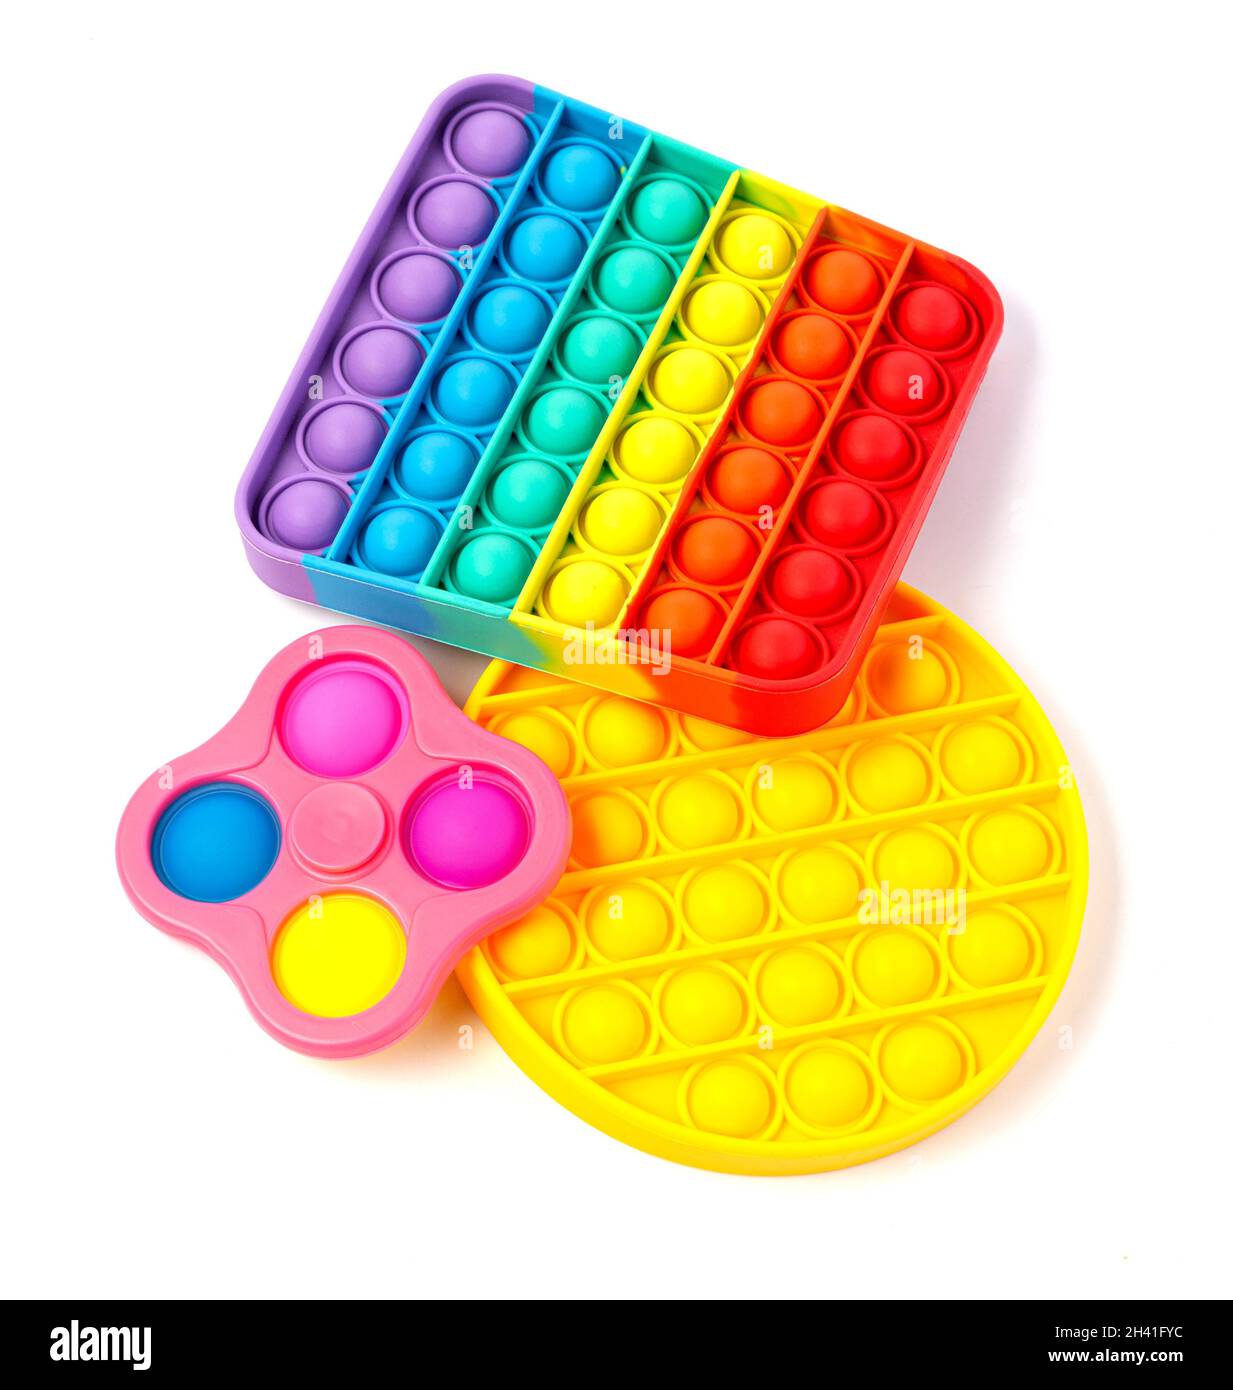 Pop It Simple Dimple - silicona sensorial anti-estrés Fidget juguete colorido arco iris juego aislado sobre fondo blanco, espacio de copia. Foto de stock